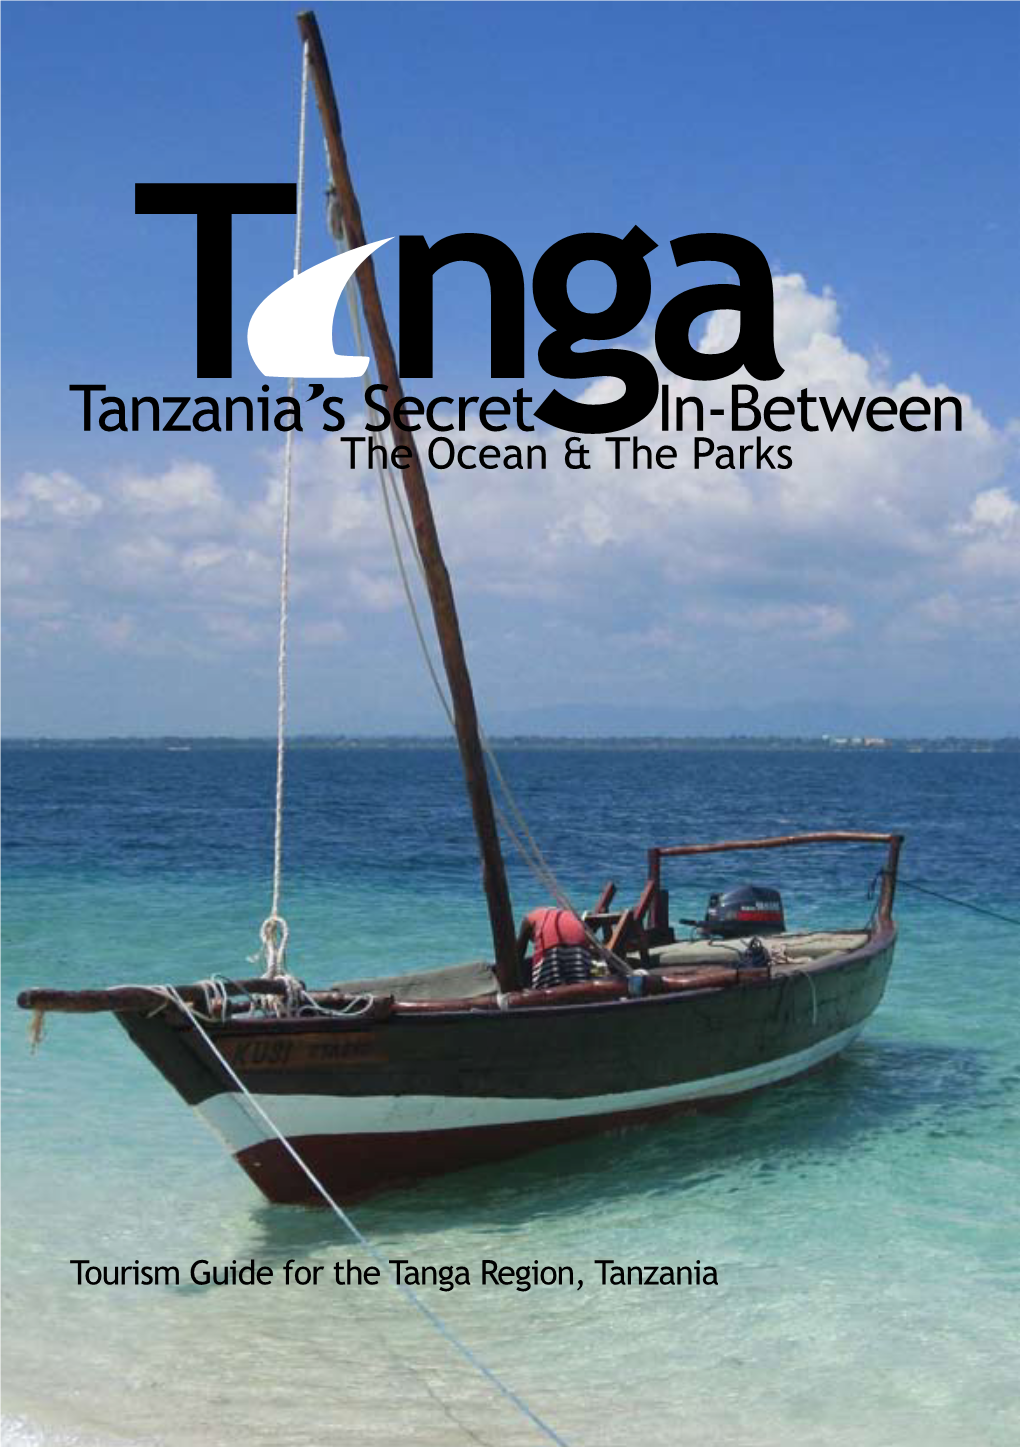 Tourism Guide for the Tanga Region, Tanzania